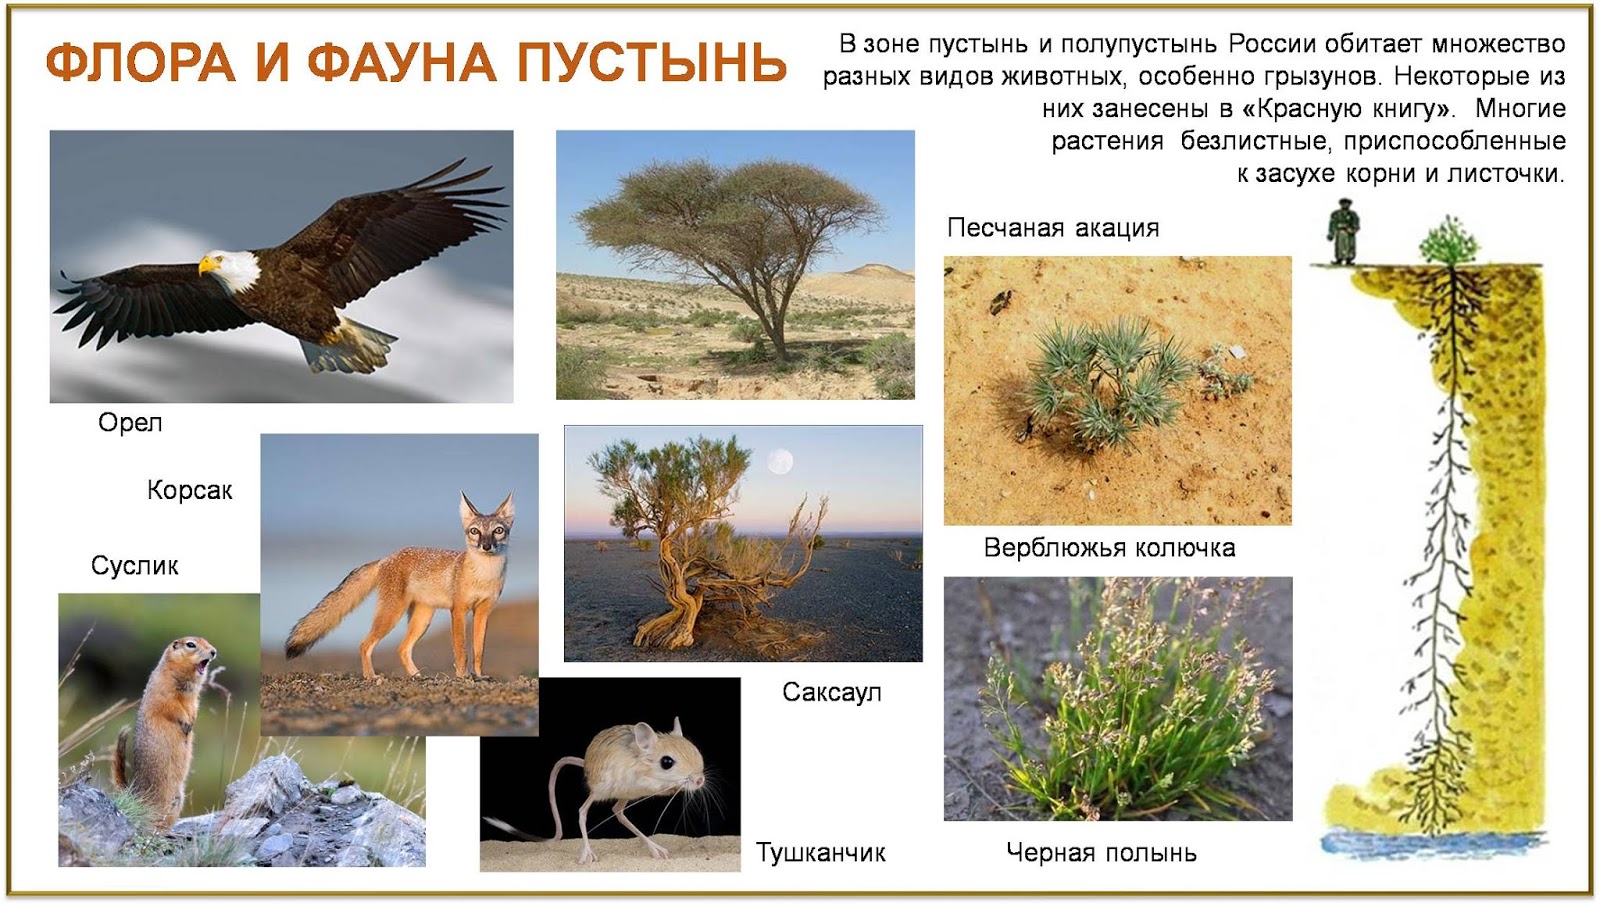 Саксаул природная зона обитания. Фауна пустынь и полупустынь в России. Зона полупустынь и пустынь растительный и животный мир.